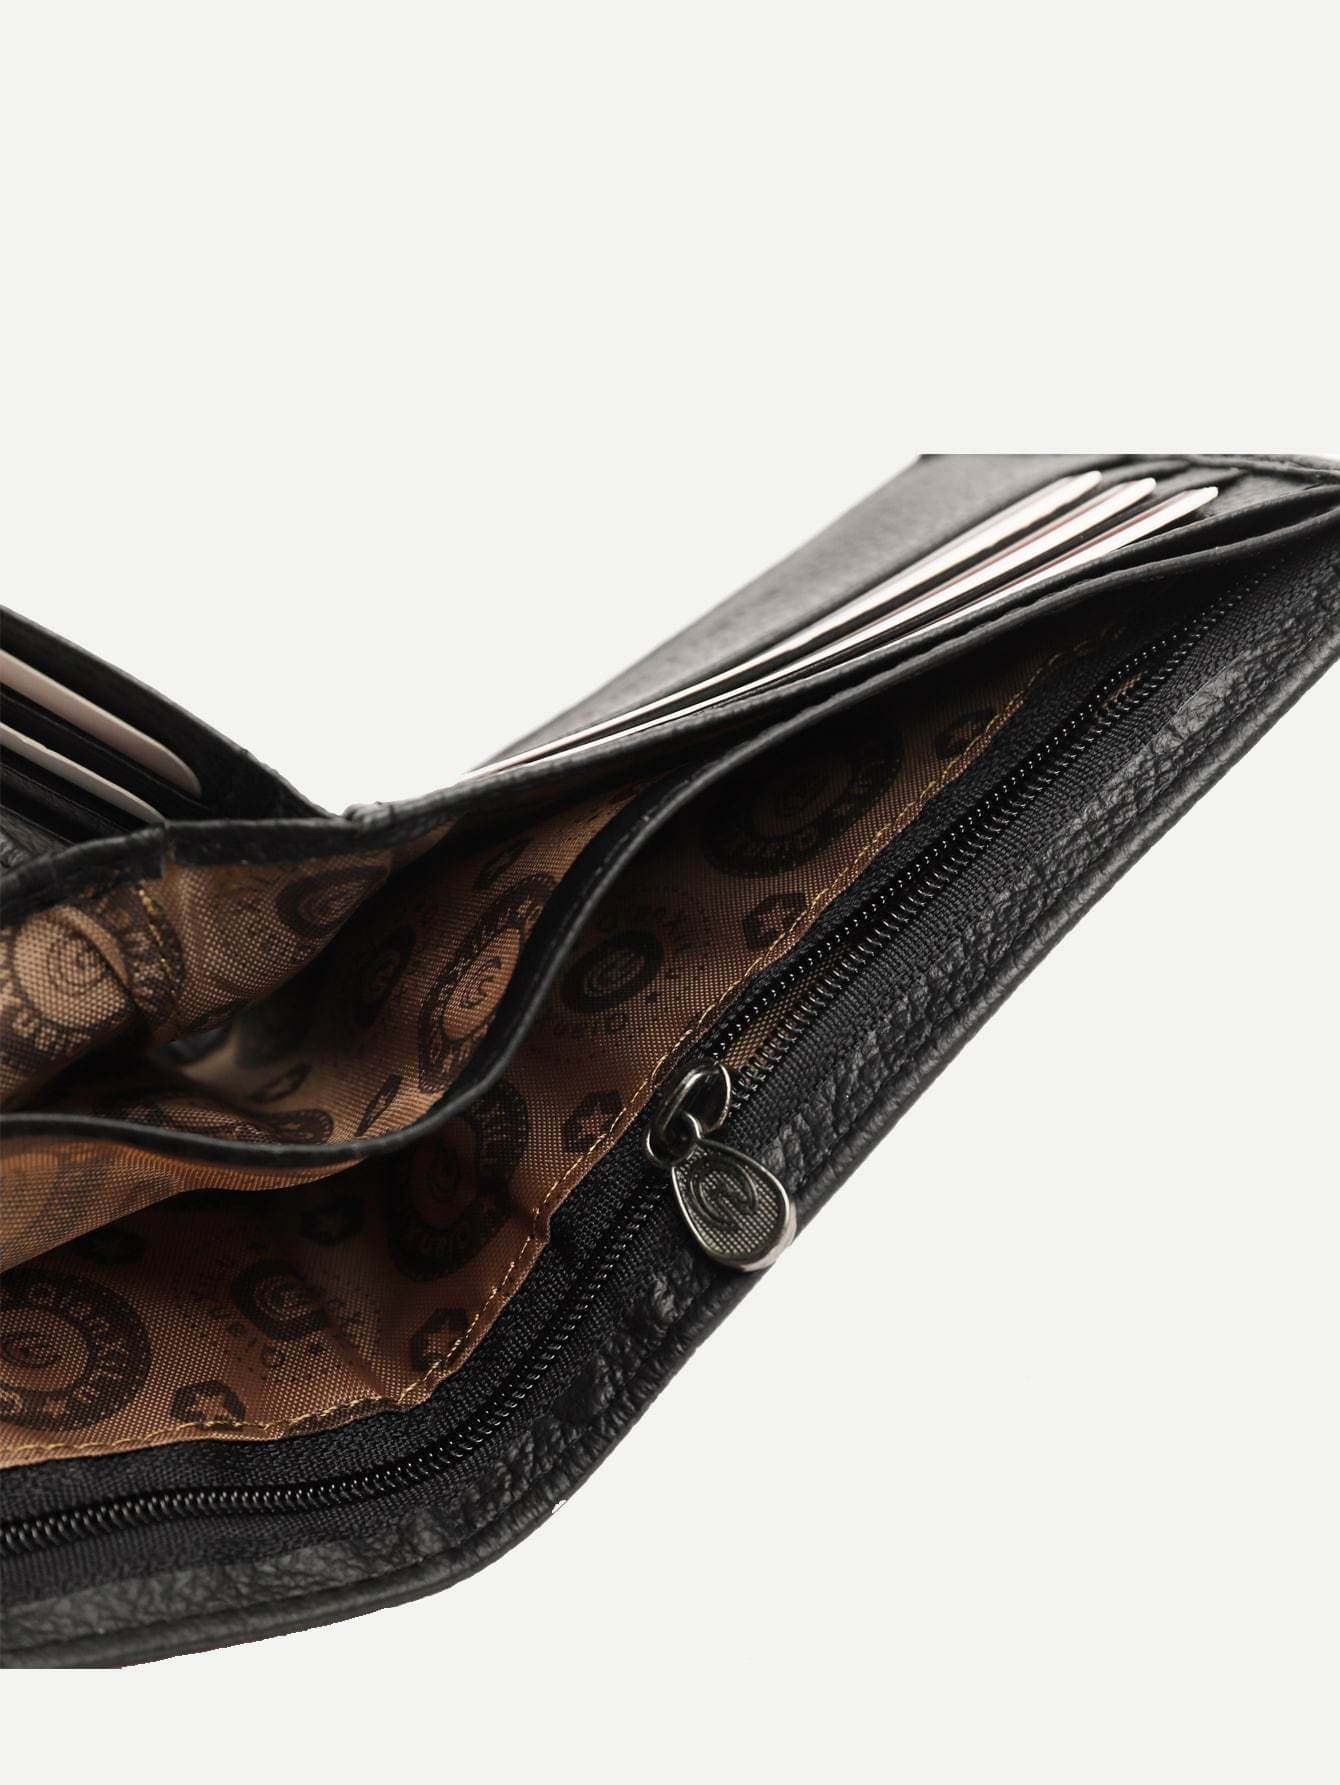 Black Textured PU Wallet